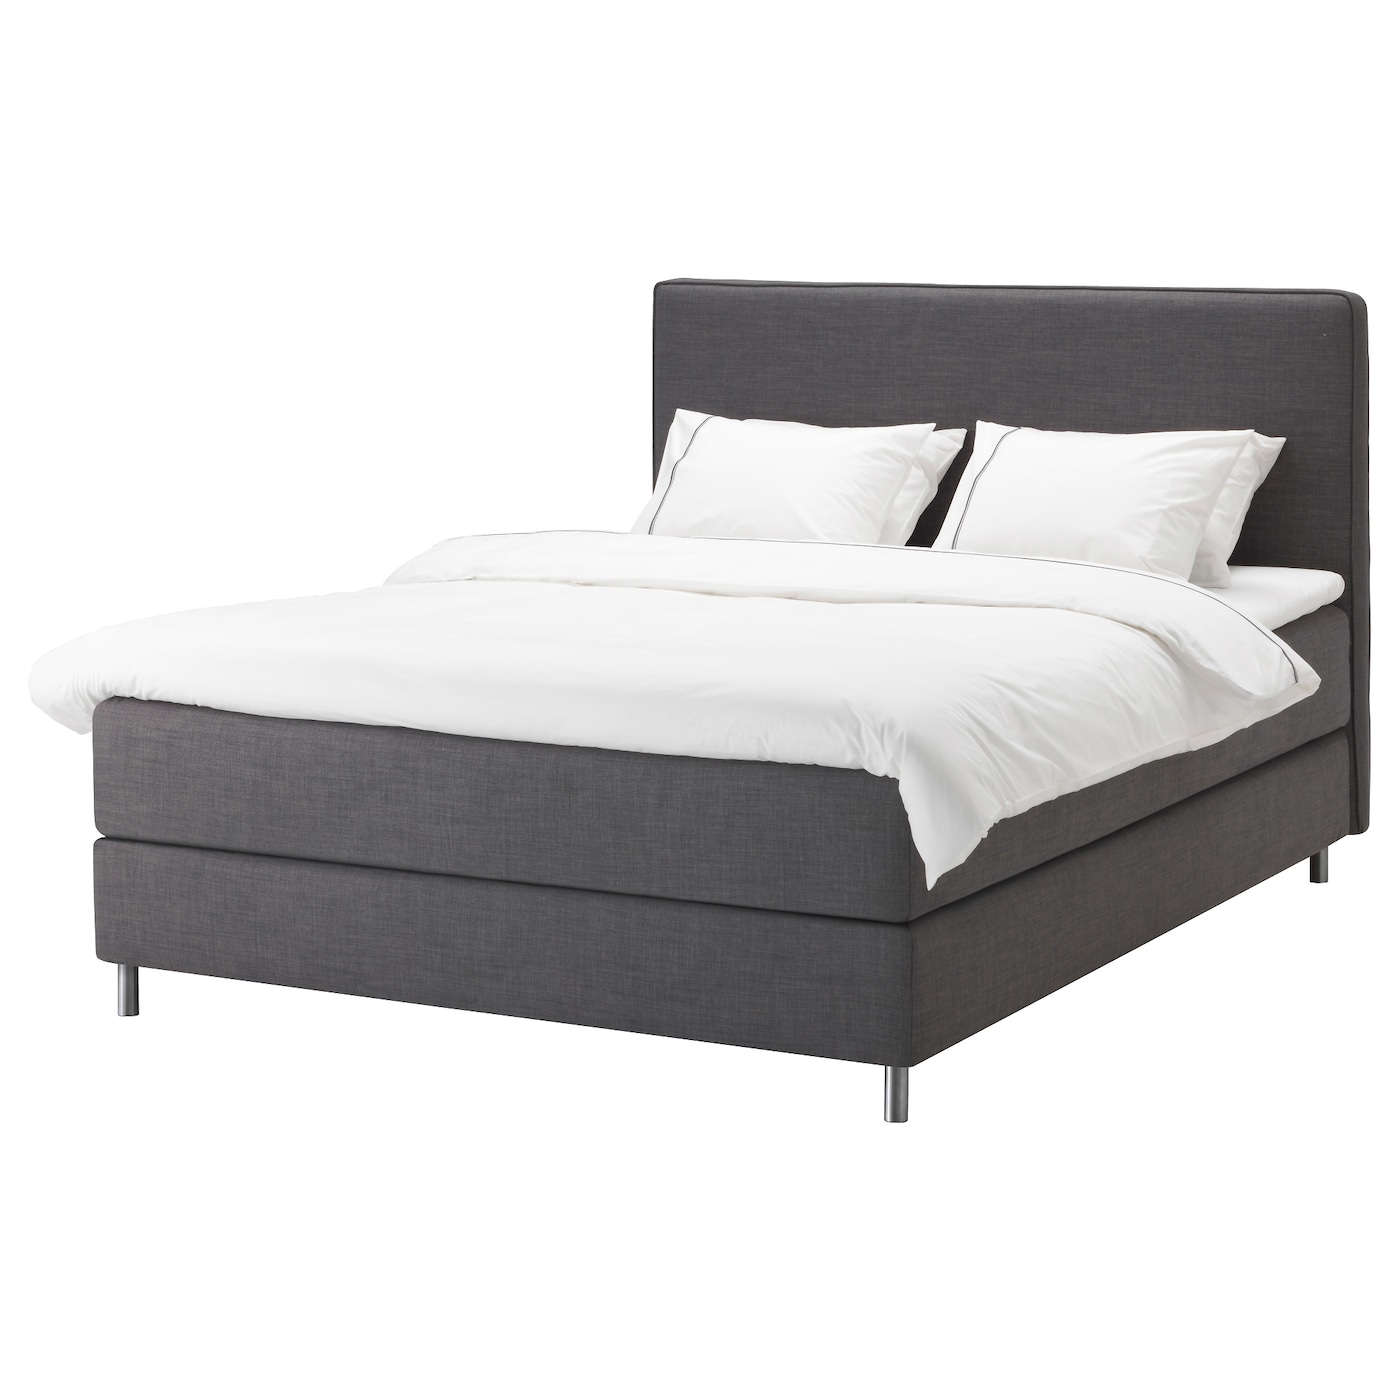 Континентальная кровать - IKEA DUNVIK, 200х140 см, матрас средне-жесткий, темно-серый, ДУНВИК ИКЕА